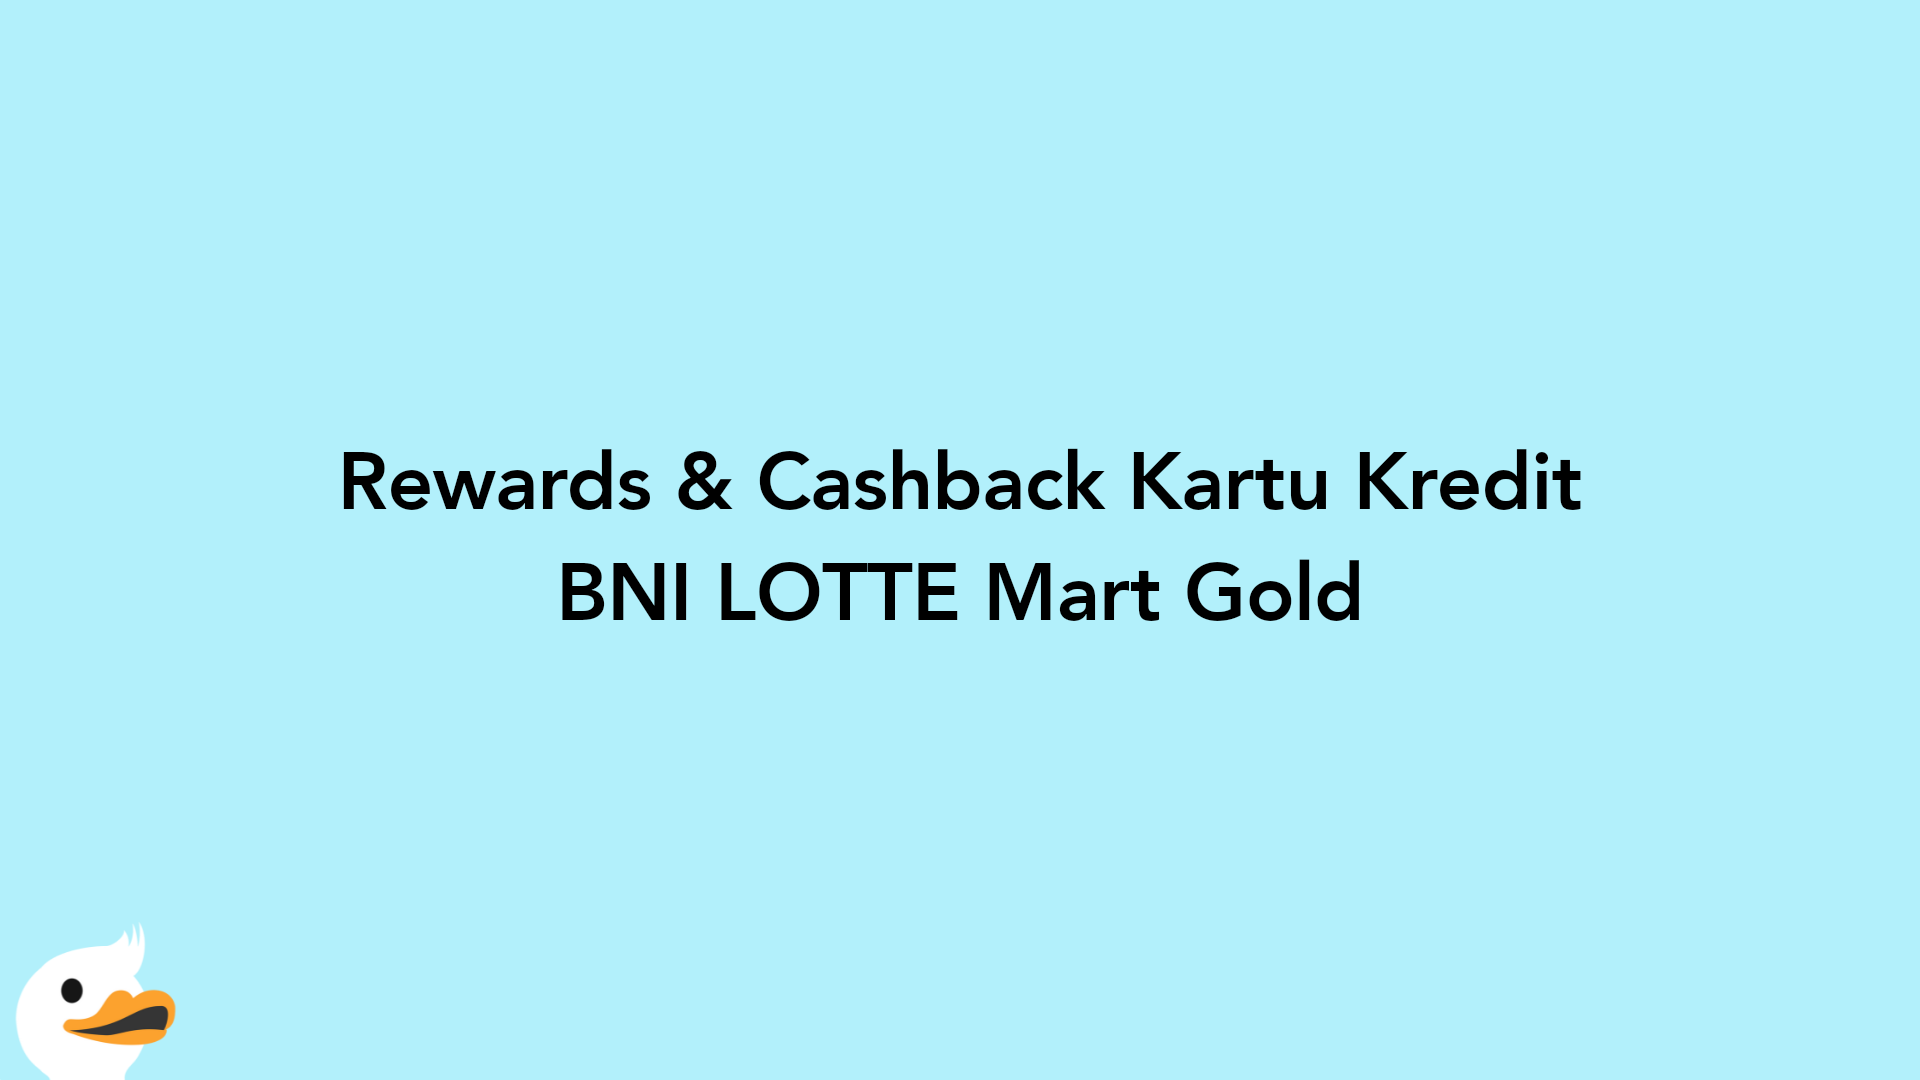 Rewards & Cashback Kartu Kredit BNI LOTTE Mart Gold